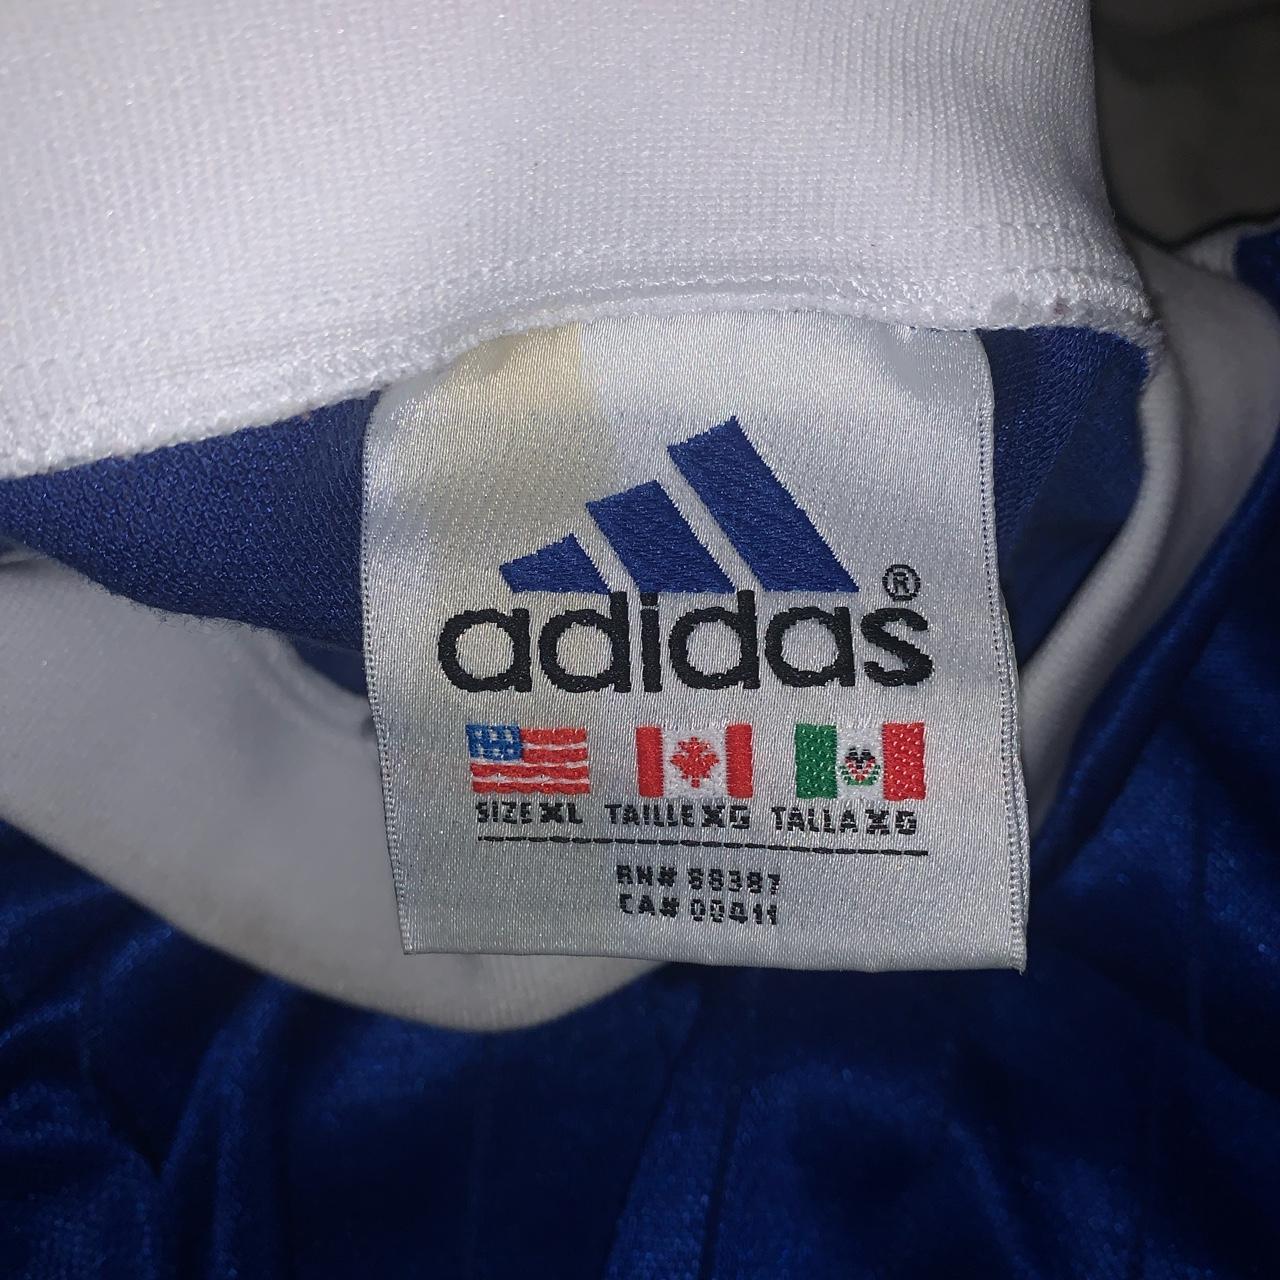 Vintage 90s adidas soccer/futbol jersey - Depop